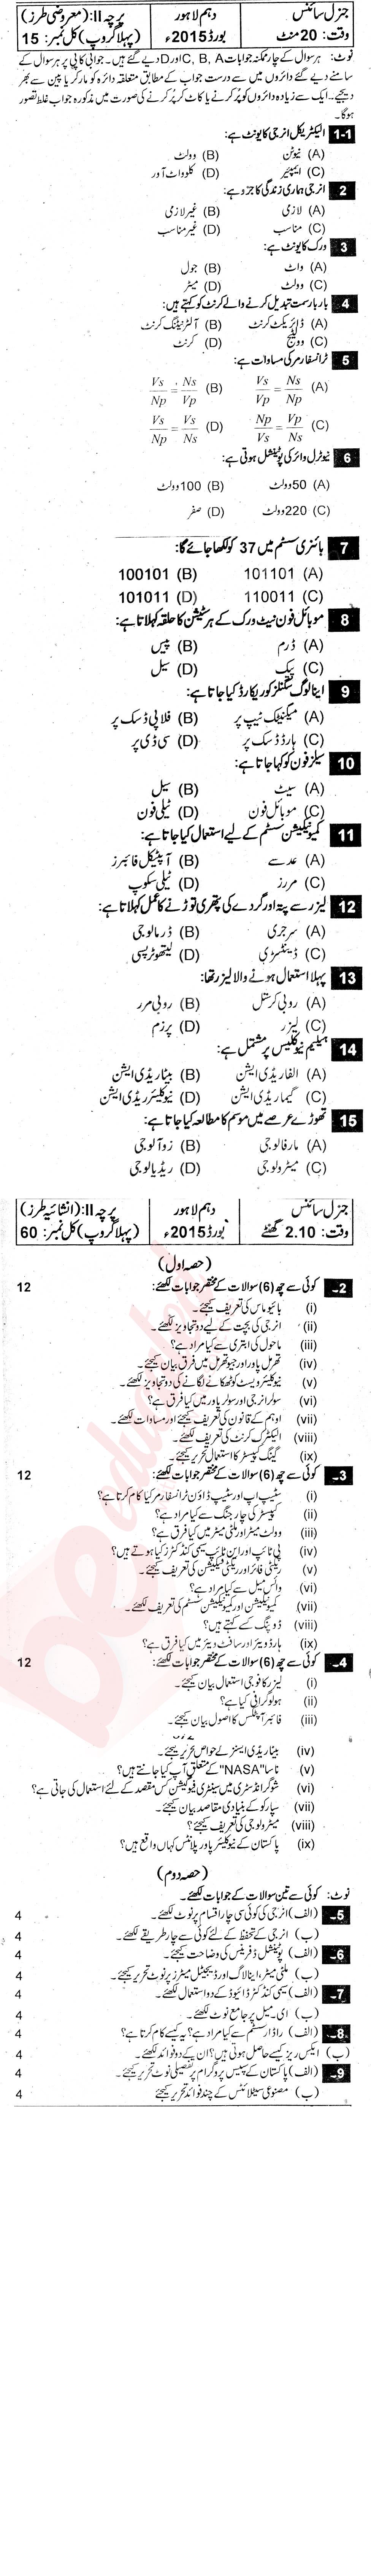 General Science 10th Urdu Medium Past Paper Group 1 BISE Lahore 2015